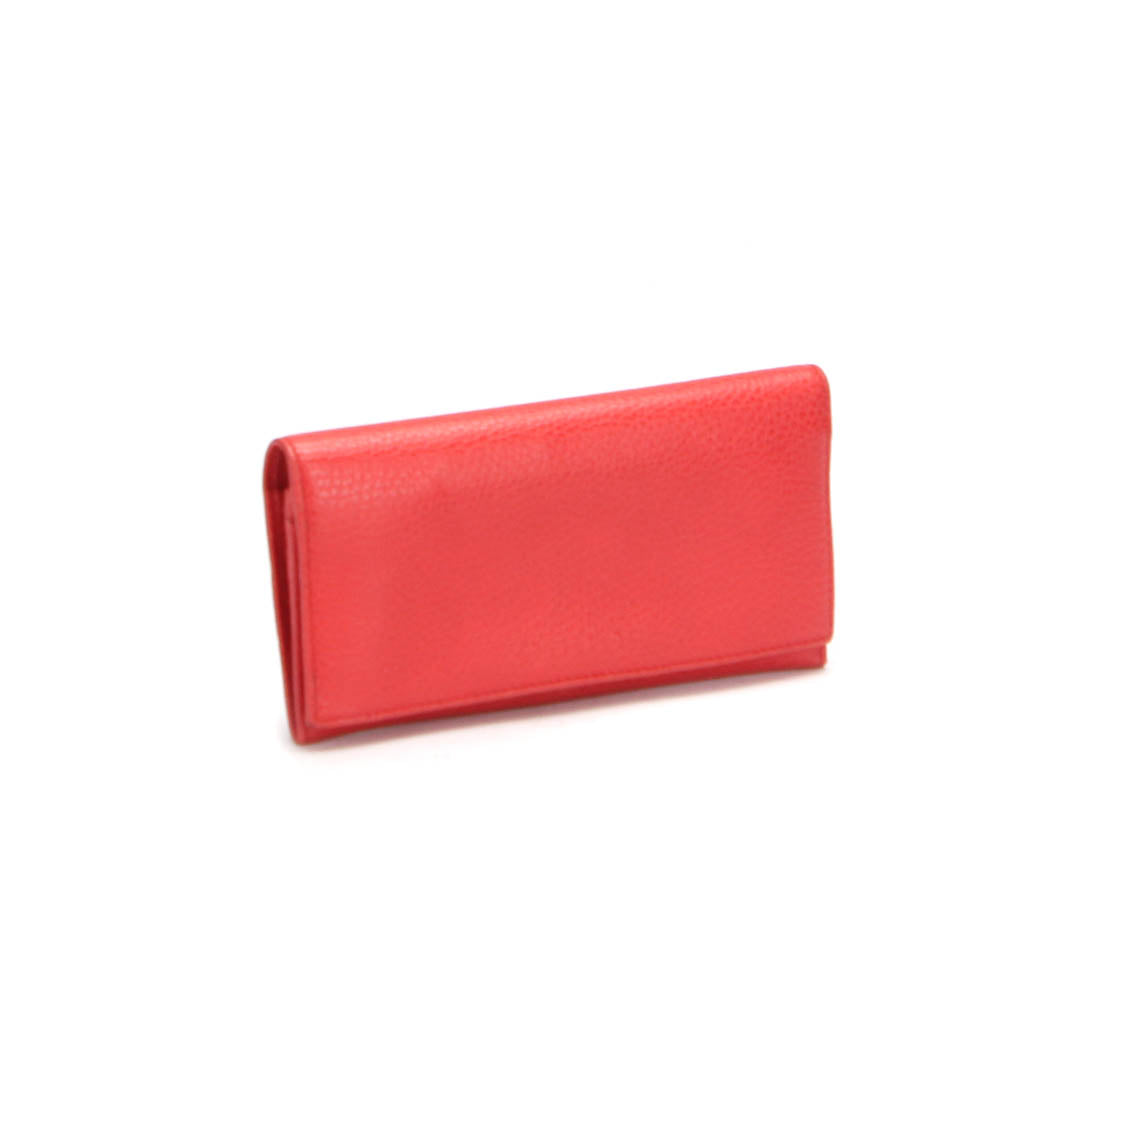 Leather Bi-Fold Long Wallet 305282